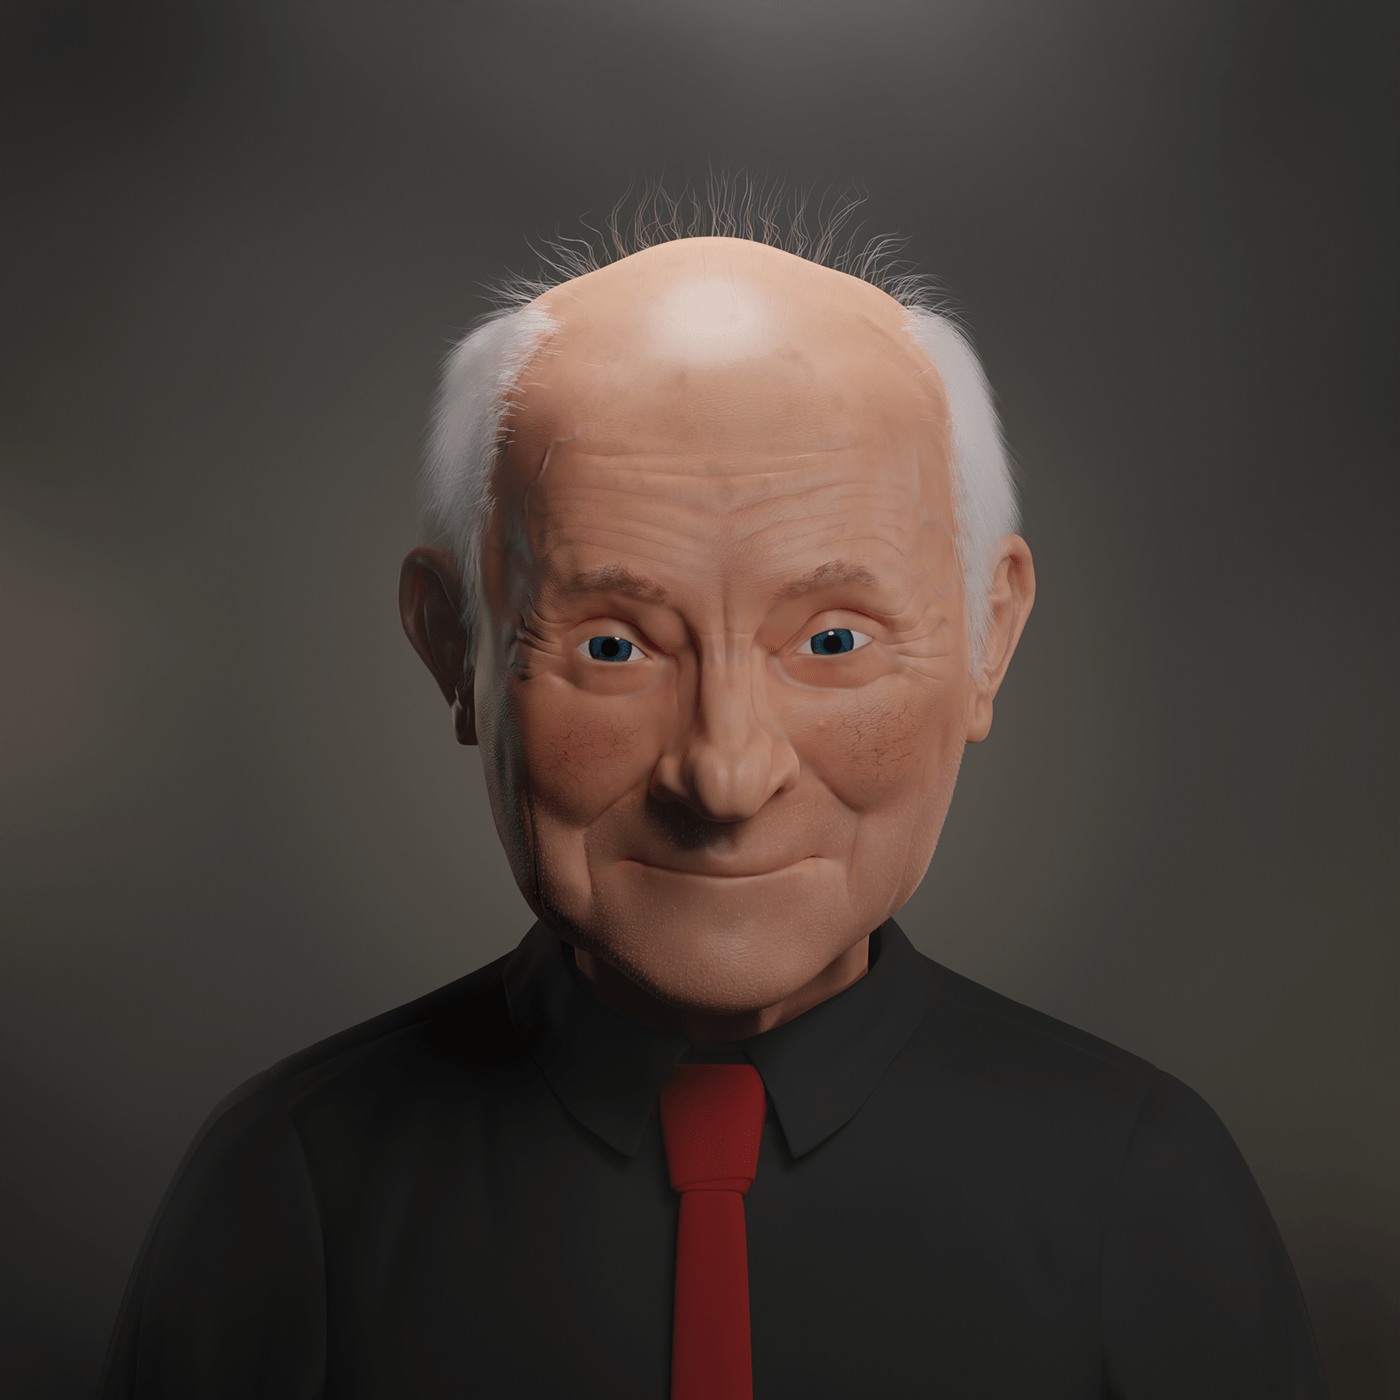 3D 3d modeling blender portrait Render